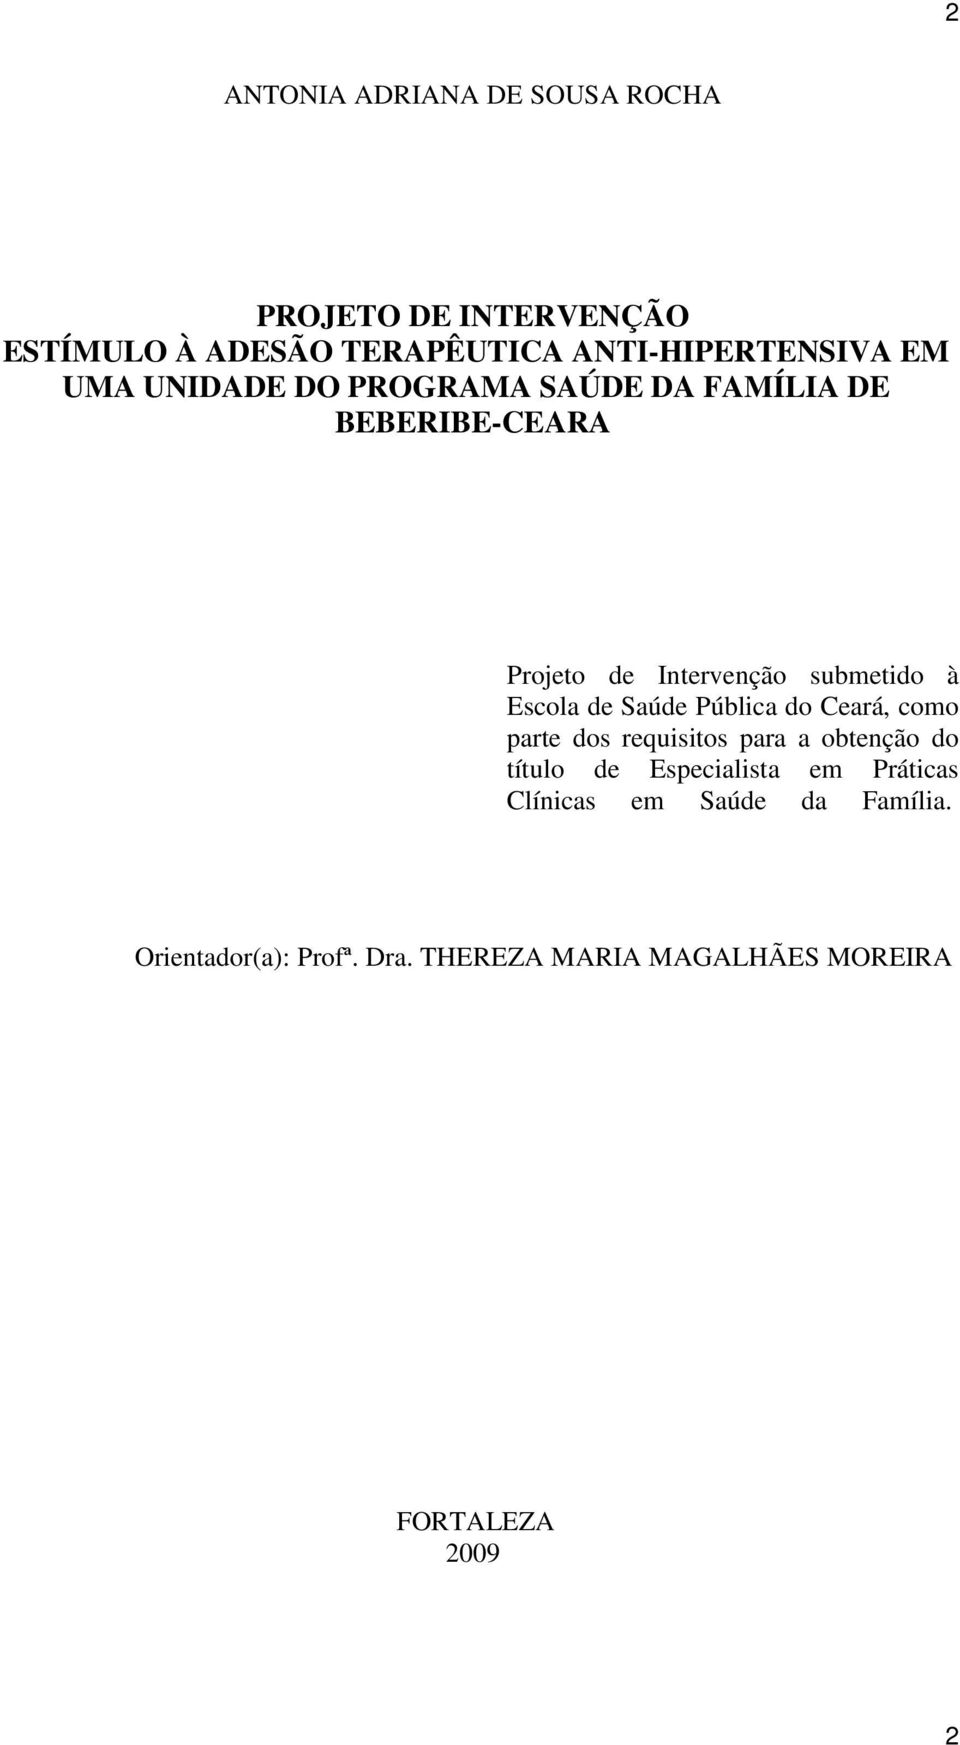 de Saúde Pública do Ceará, como parte dos requisitos para a obtenção do título de Especialista em